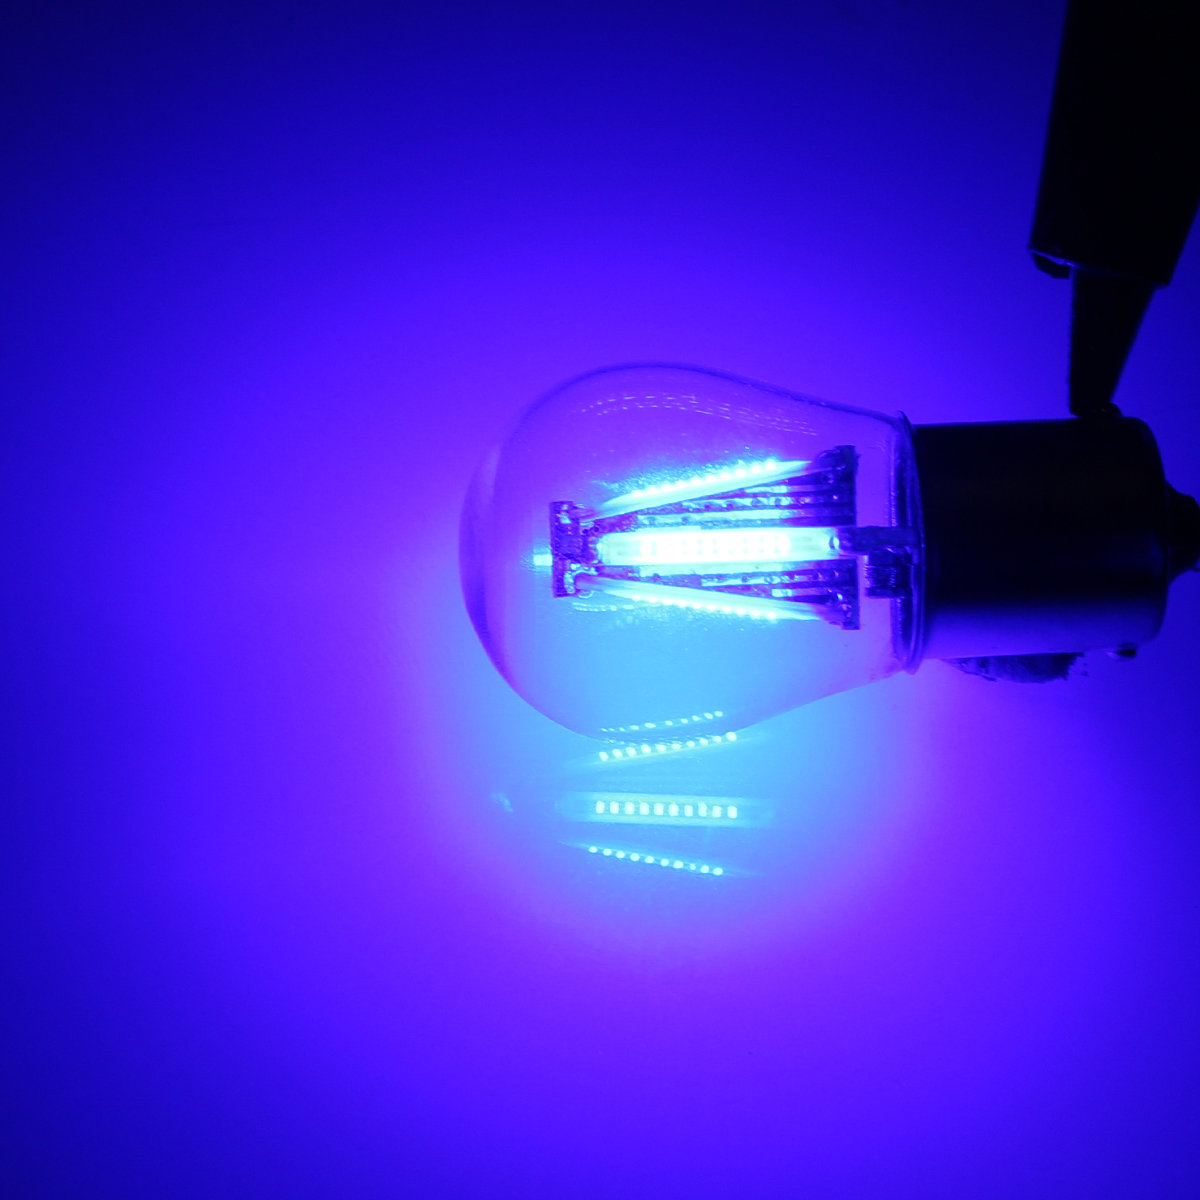 4-Filament COB LED 1156 BAU15S PY21W LED Turn Signal Light Rear Reverse Stop Lamp Bulb 6 Colors for DC12-24V Cars